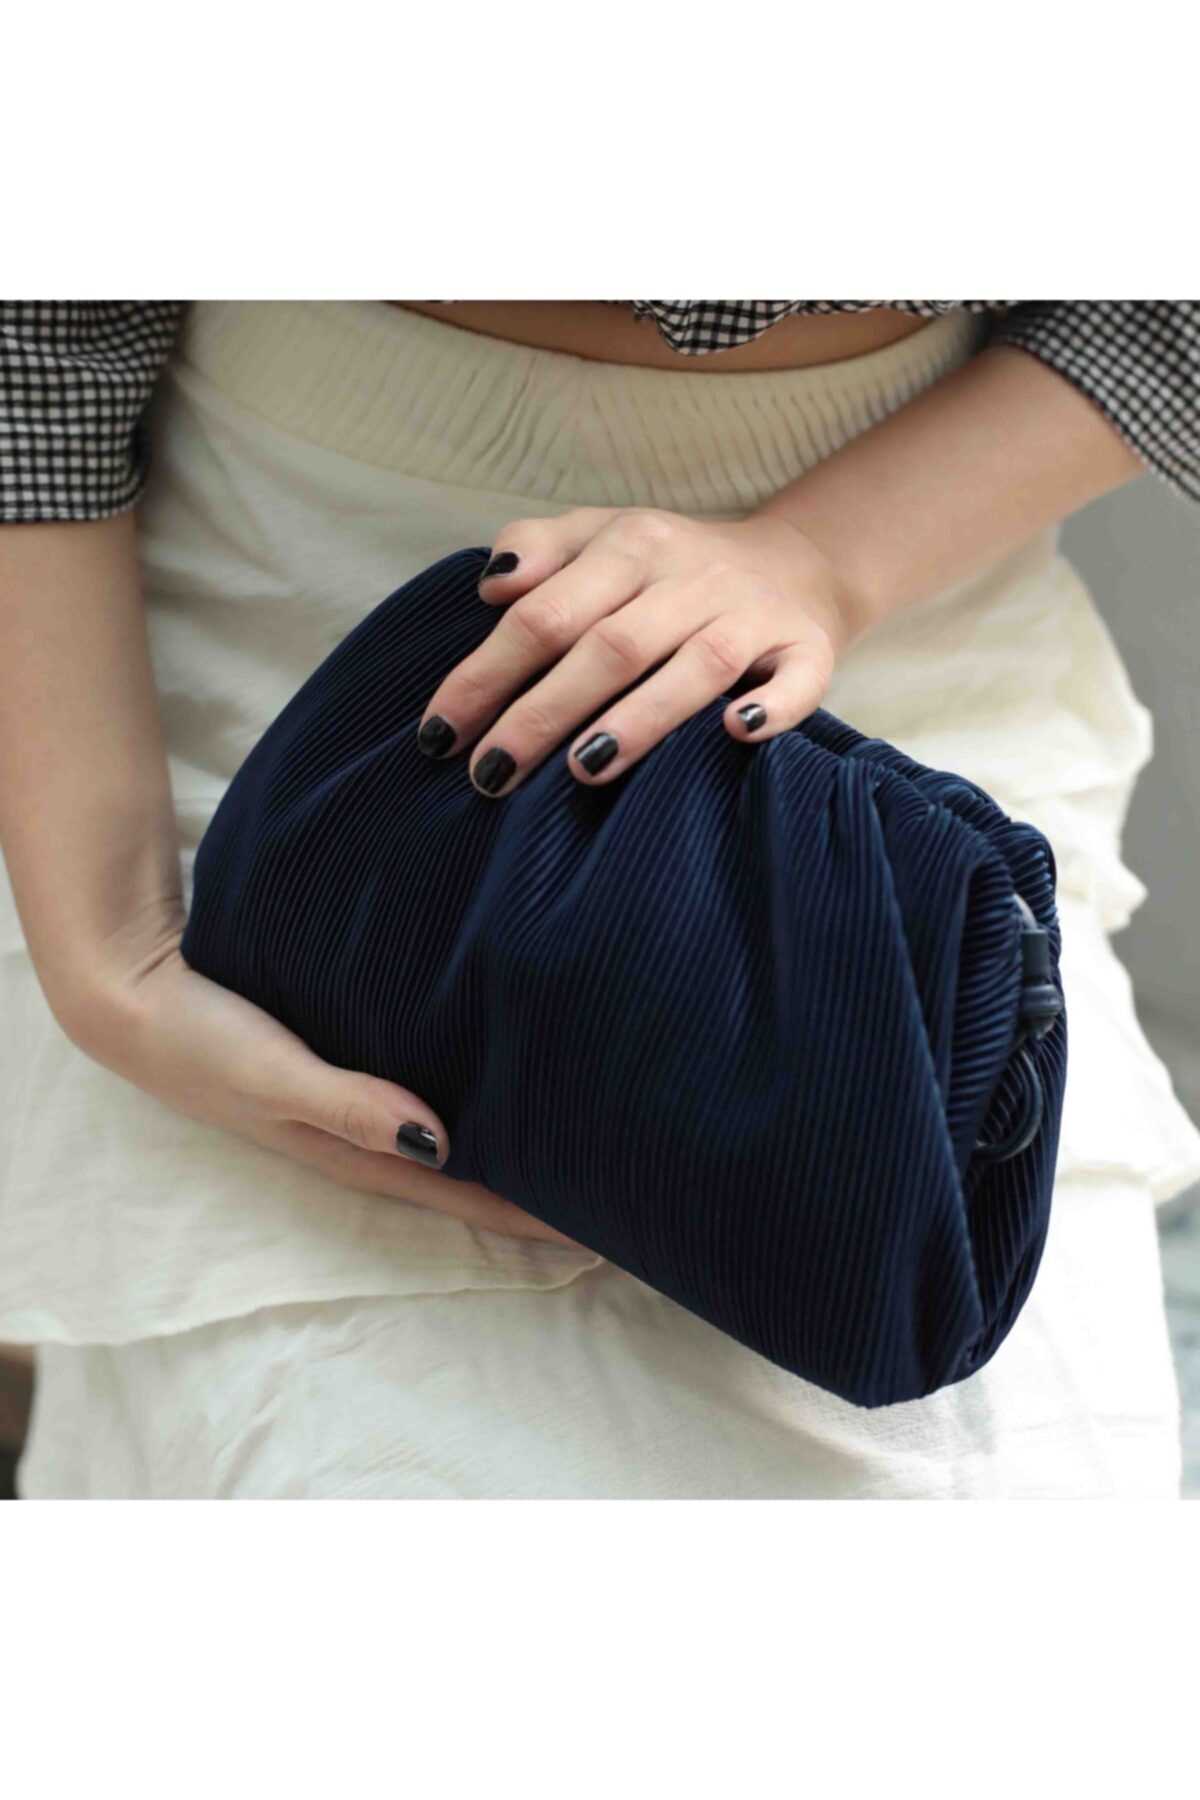 فروش کیف دستی دخترانه جدید شیک yumabag رنگ لاجوردی کد ty43350223